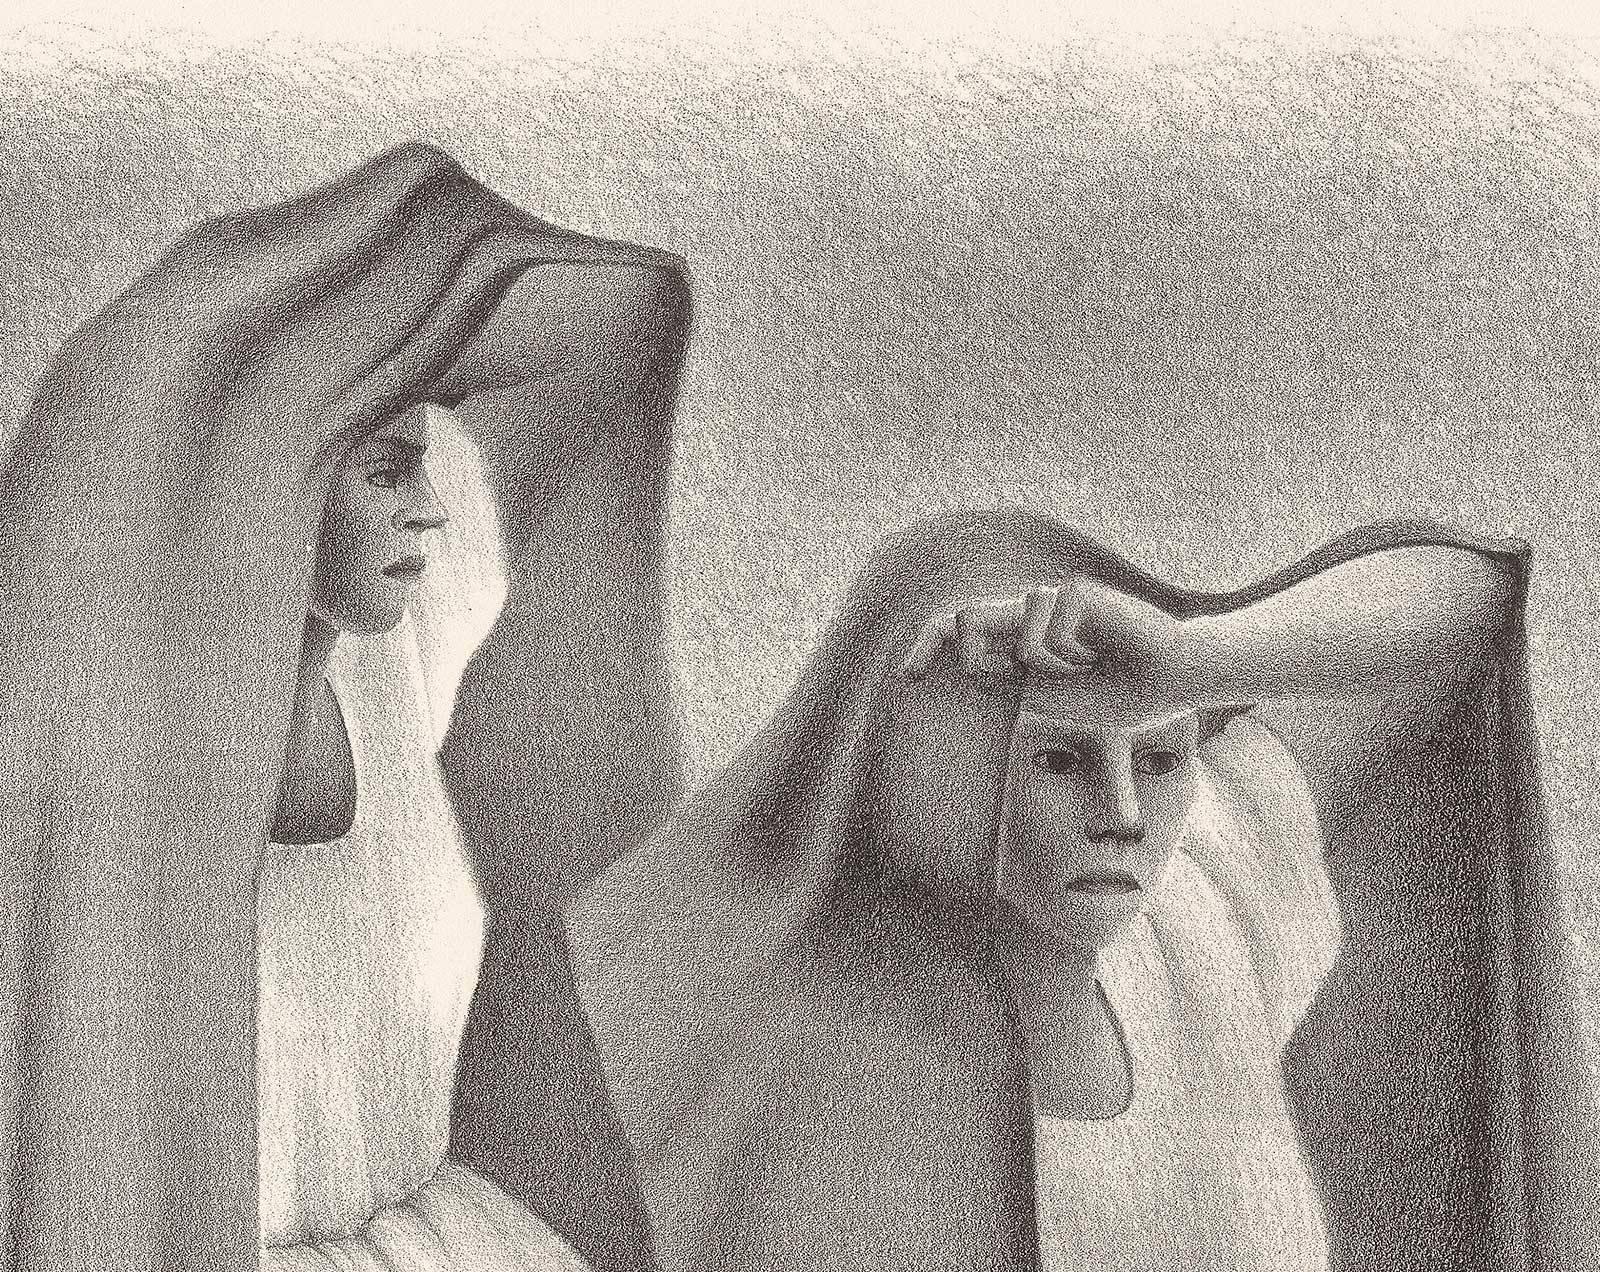 Mujeres Veracruzans (trois femmes assises de Vera Cruz au Mexique en châles) - Moderne Print par Francisco Dosamantes